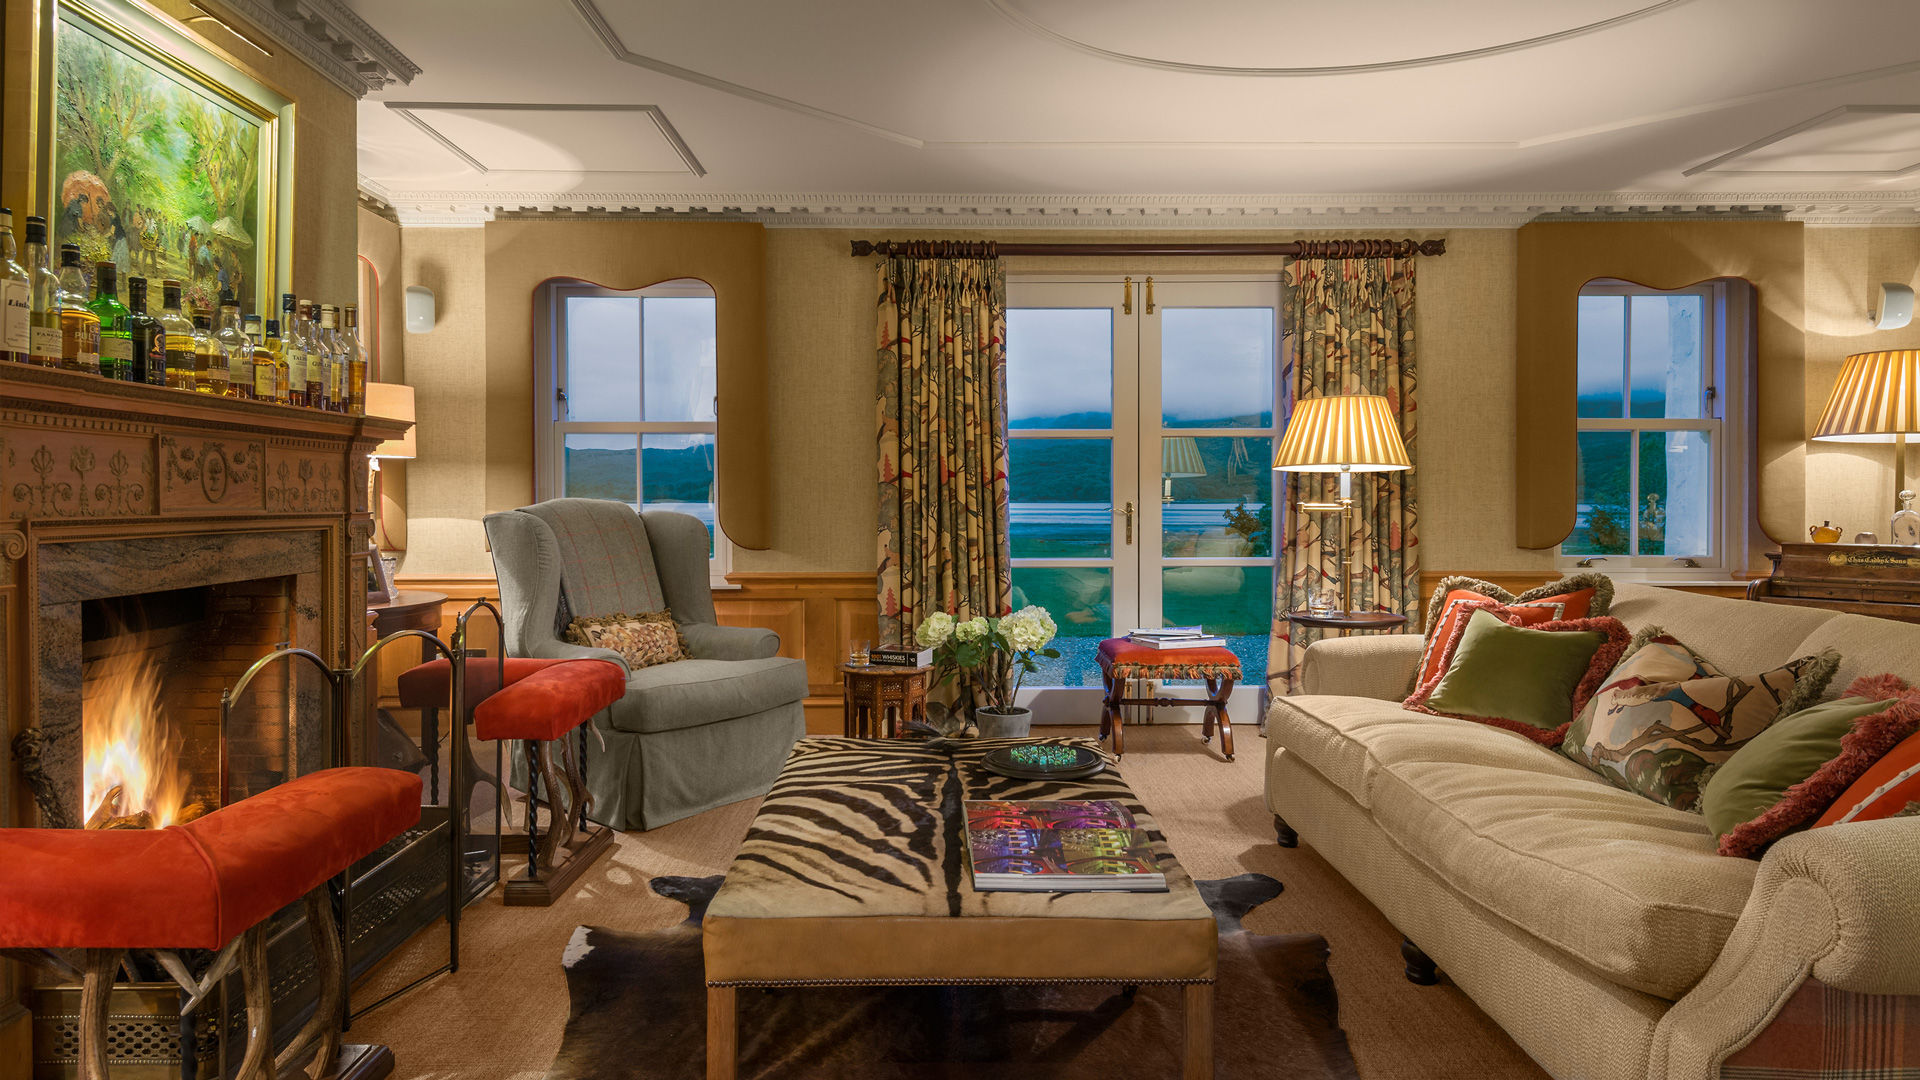 Livingroom Loch View homify Salas de estilo clásico